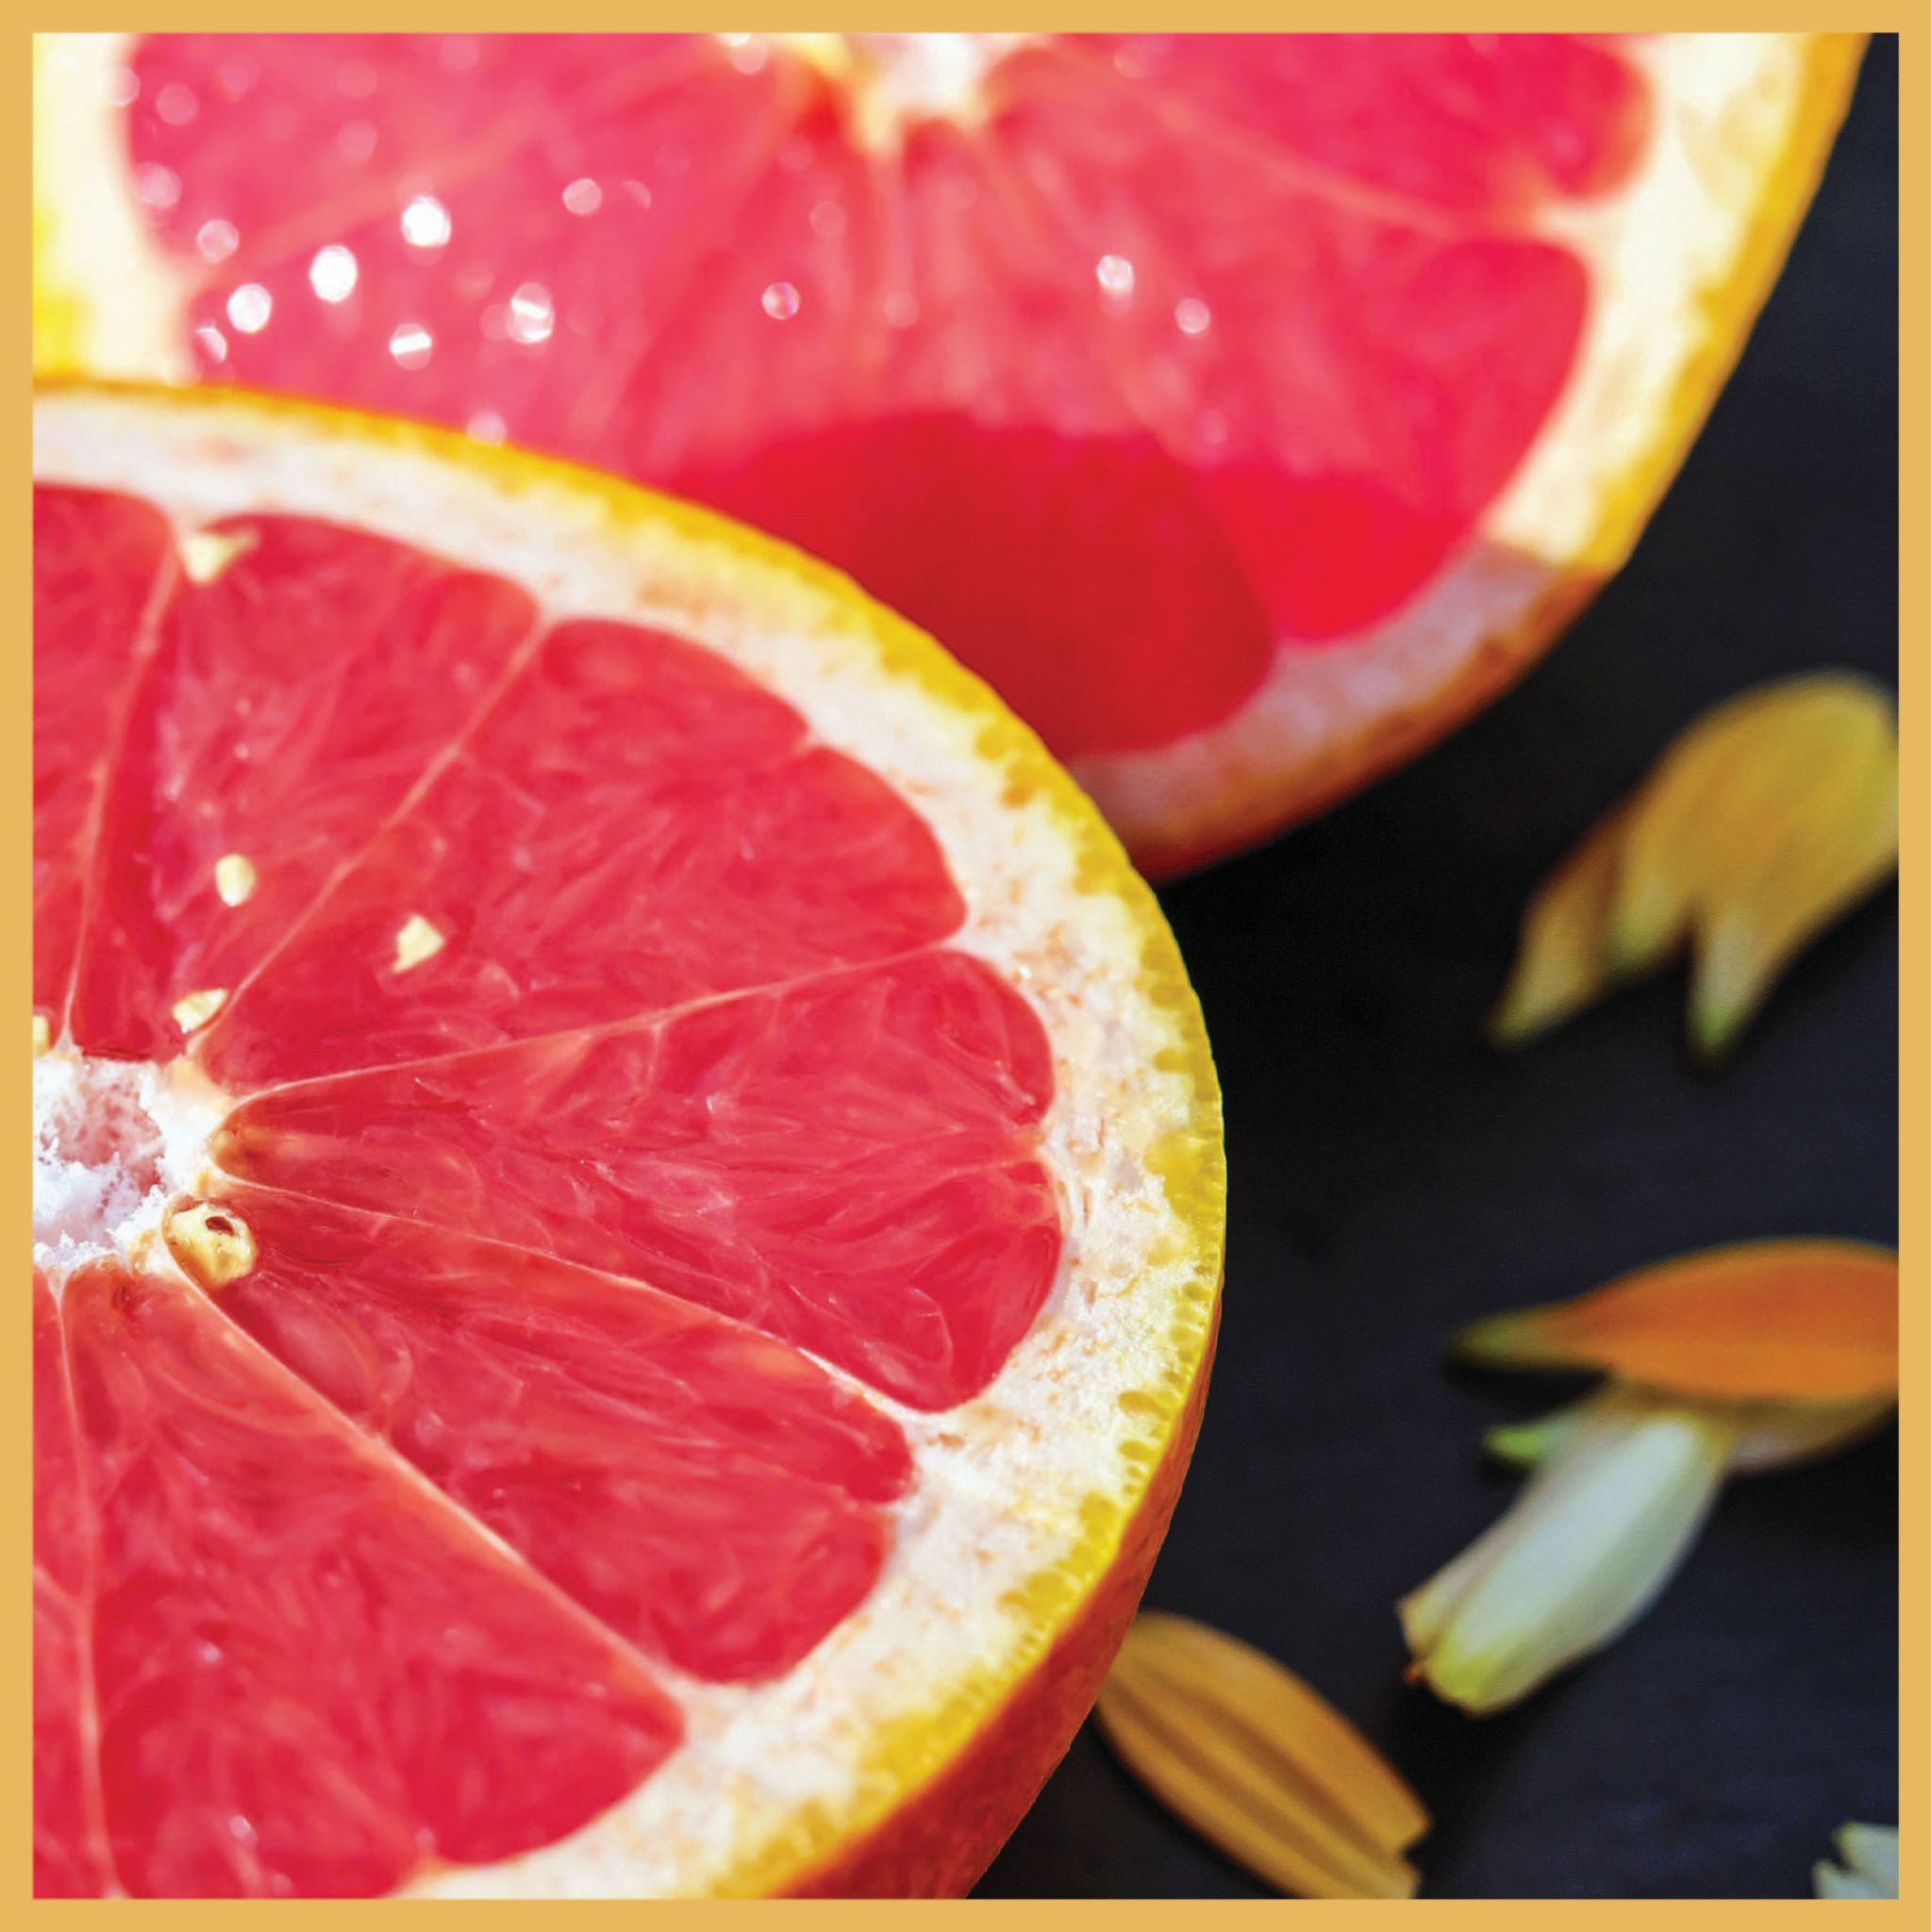 tangerine fruit